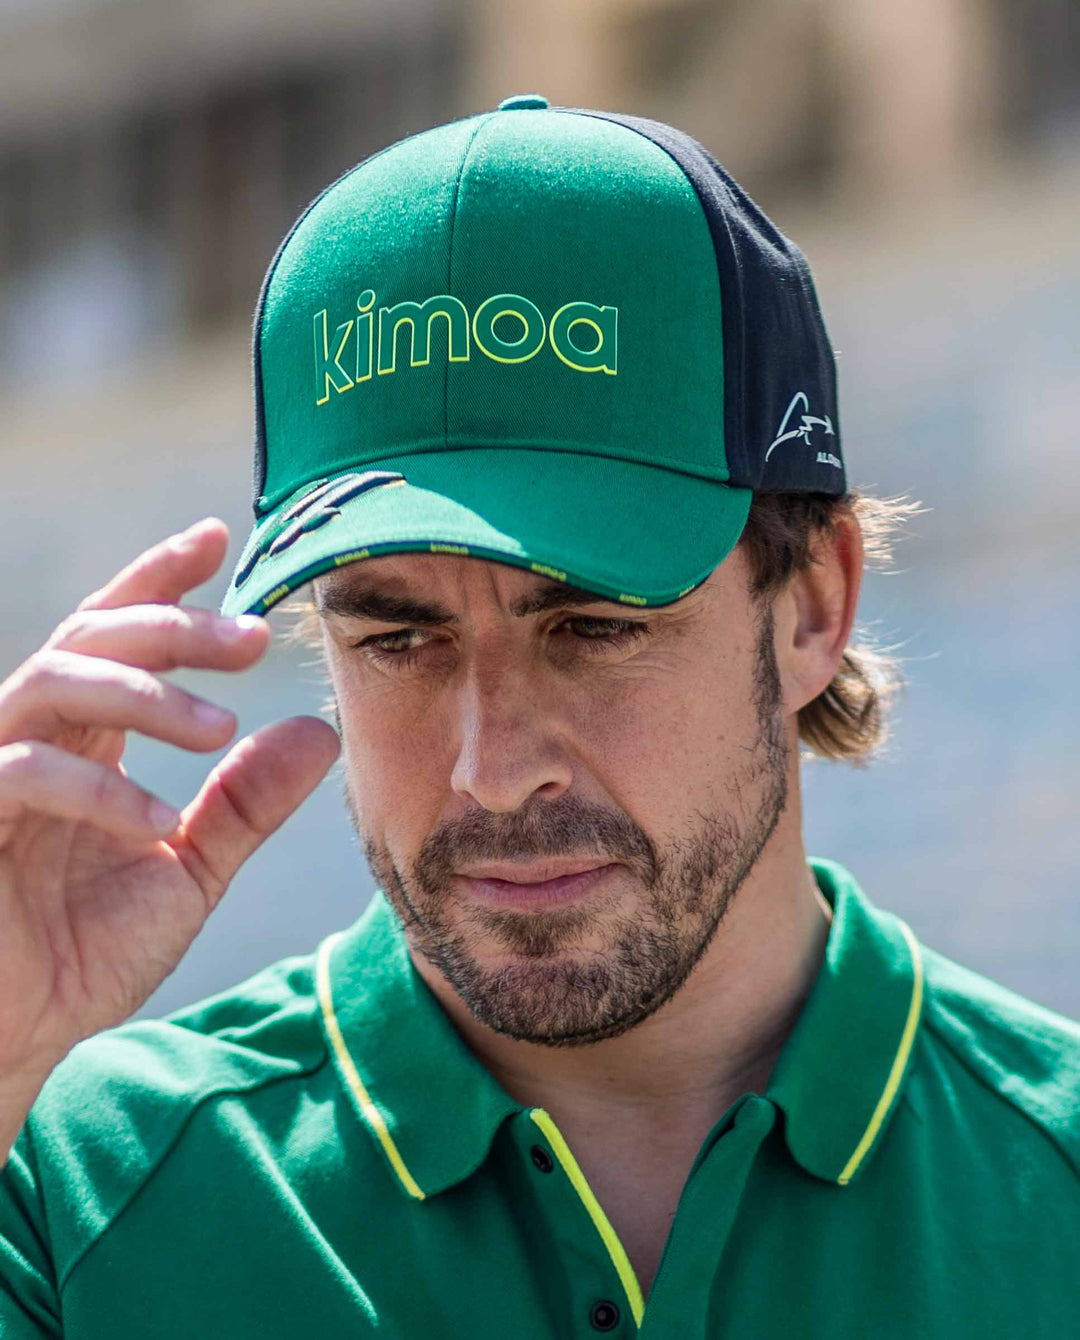 ᴄᴀᴘ ɢᴅʟ / ғ1 sᴛᴏʀᴇ on Instagram: Gorra Aston Martin F1 Hugo Boss (Green),  Oficial del campeón Fernando Alonso. 🇪🇸 ¿Qué esperas? ¡Pide ya la tuya!  Al mejor precio, solo aquí en